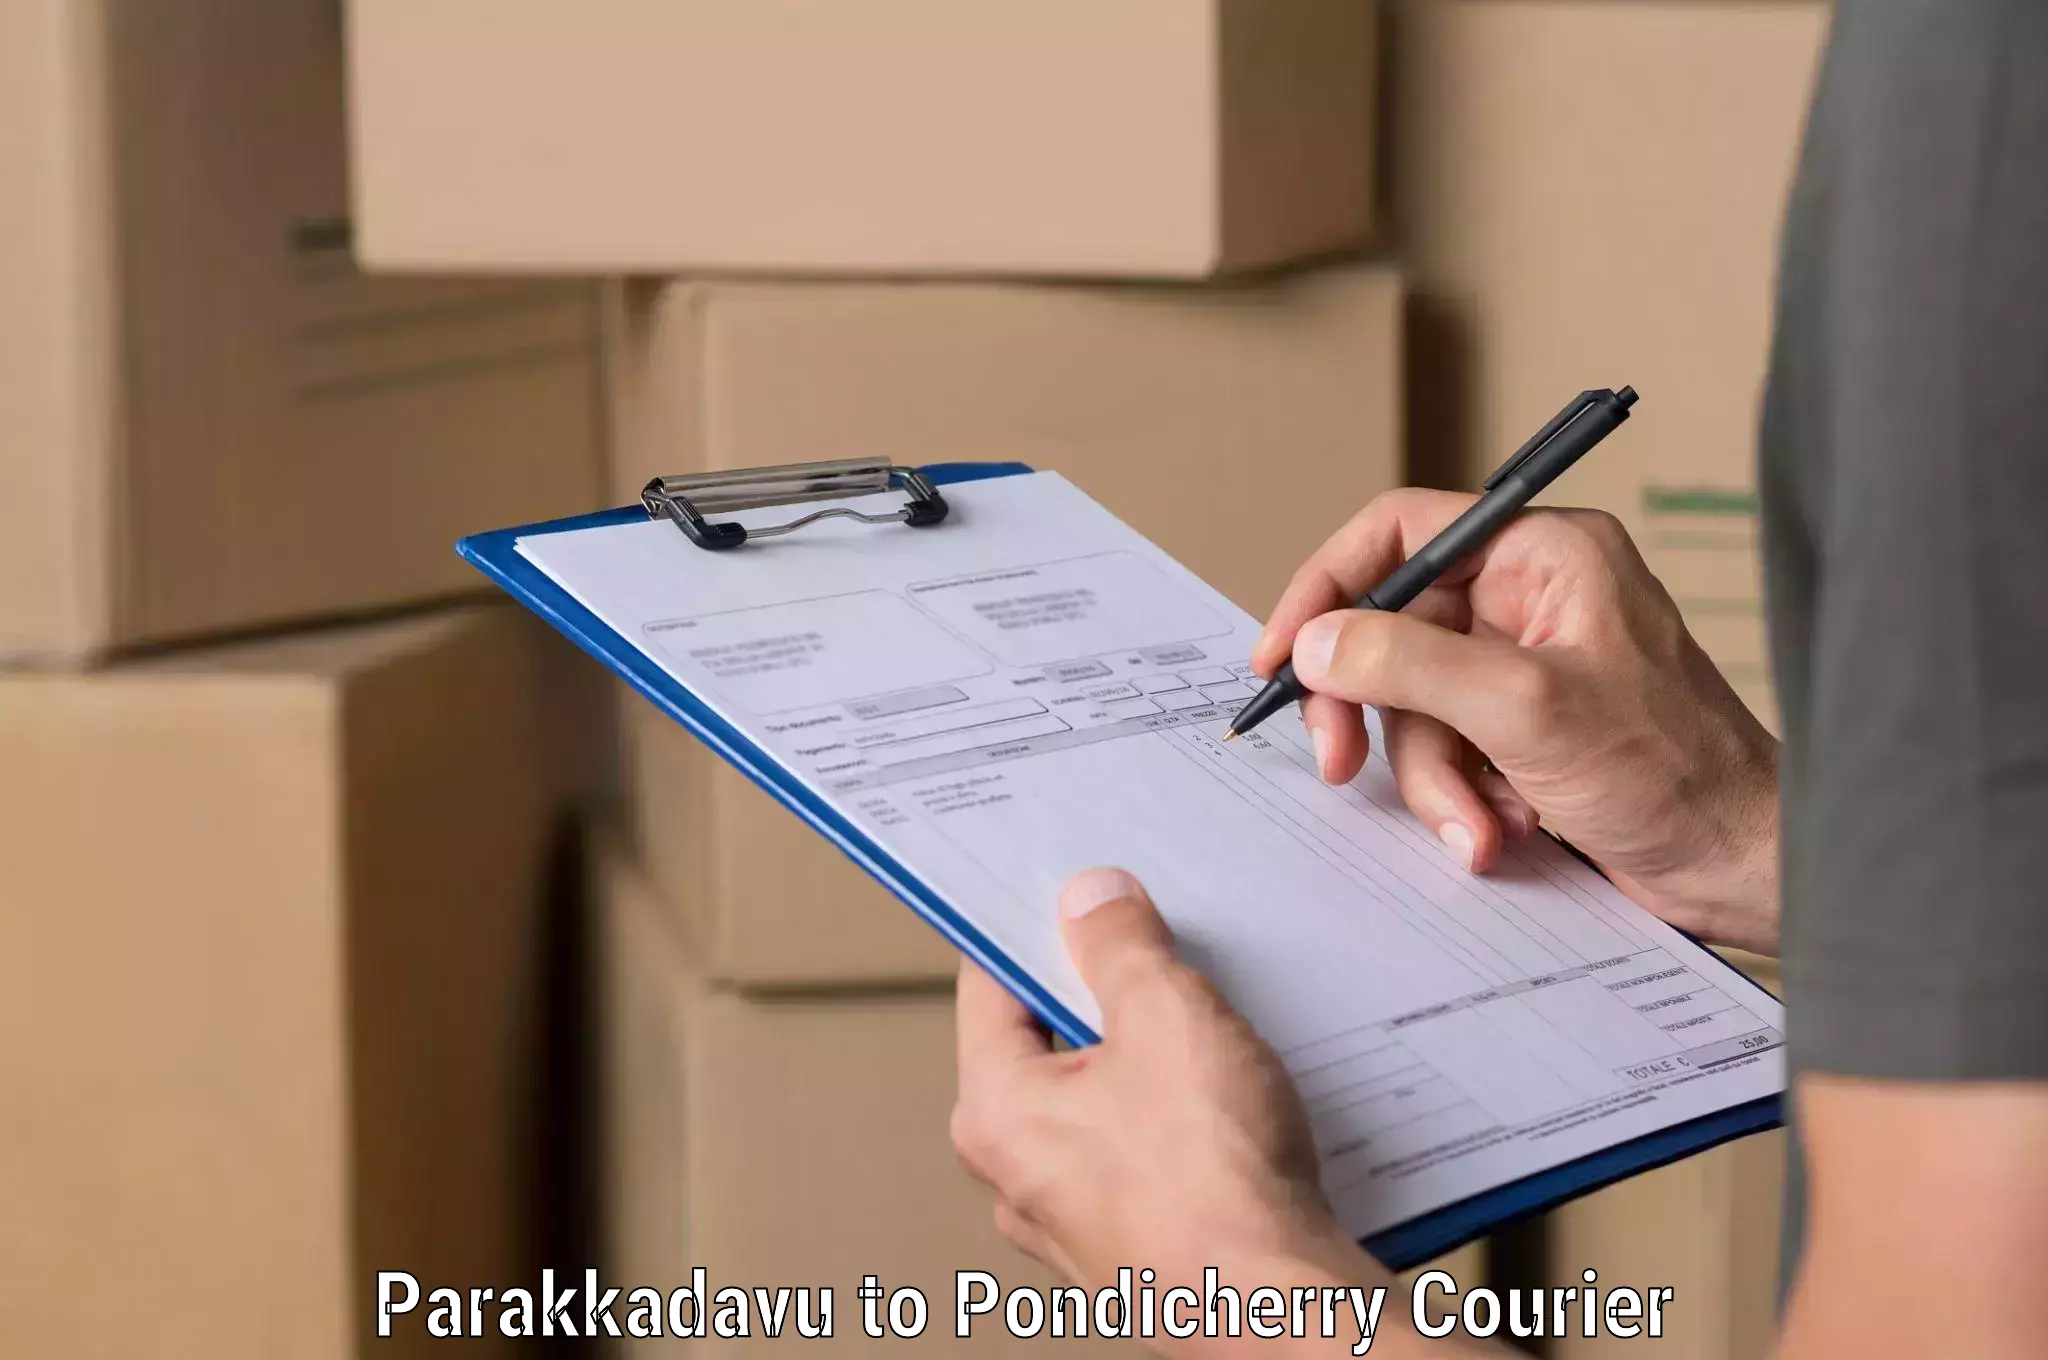 24/7 courier service in Parakkadavu to Pondicherry